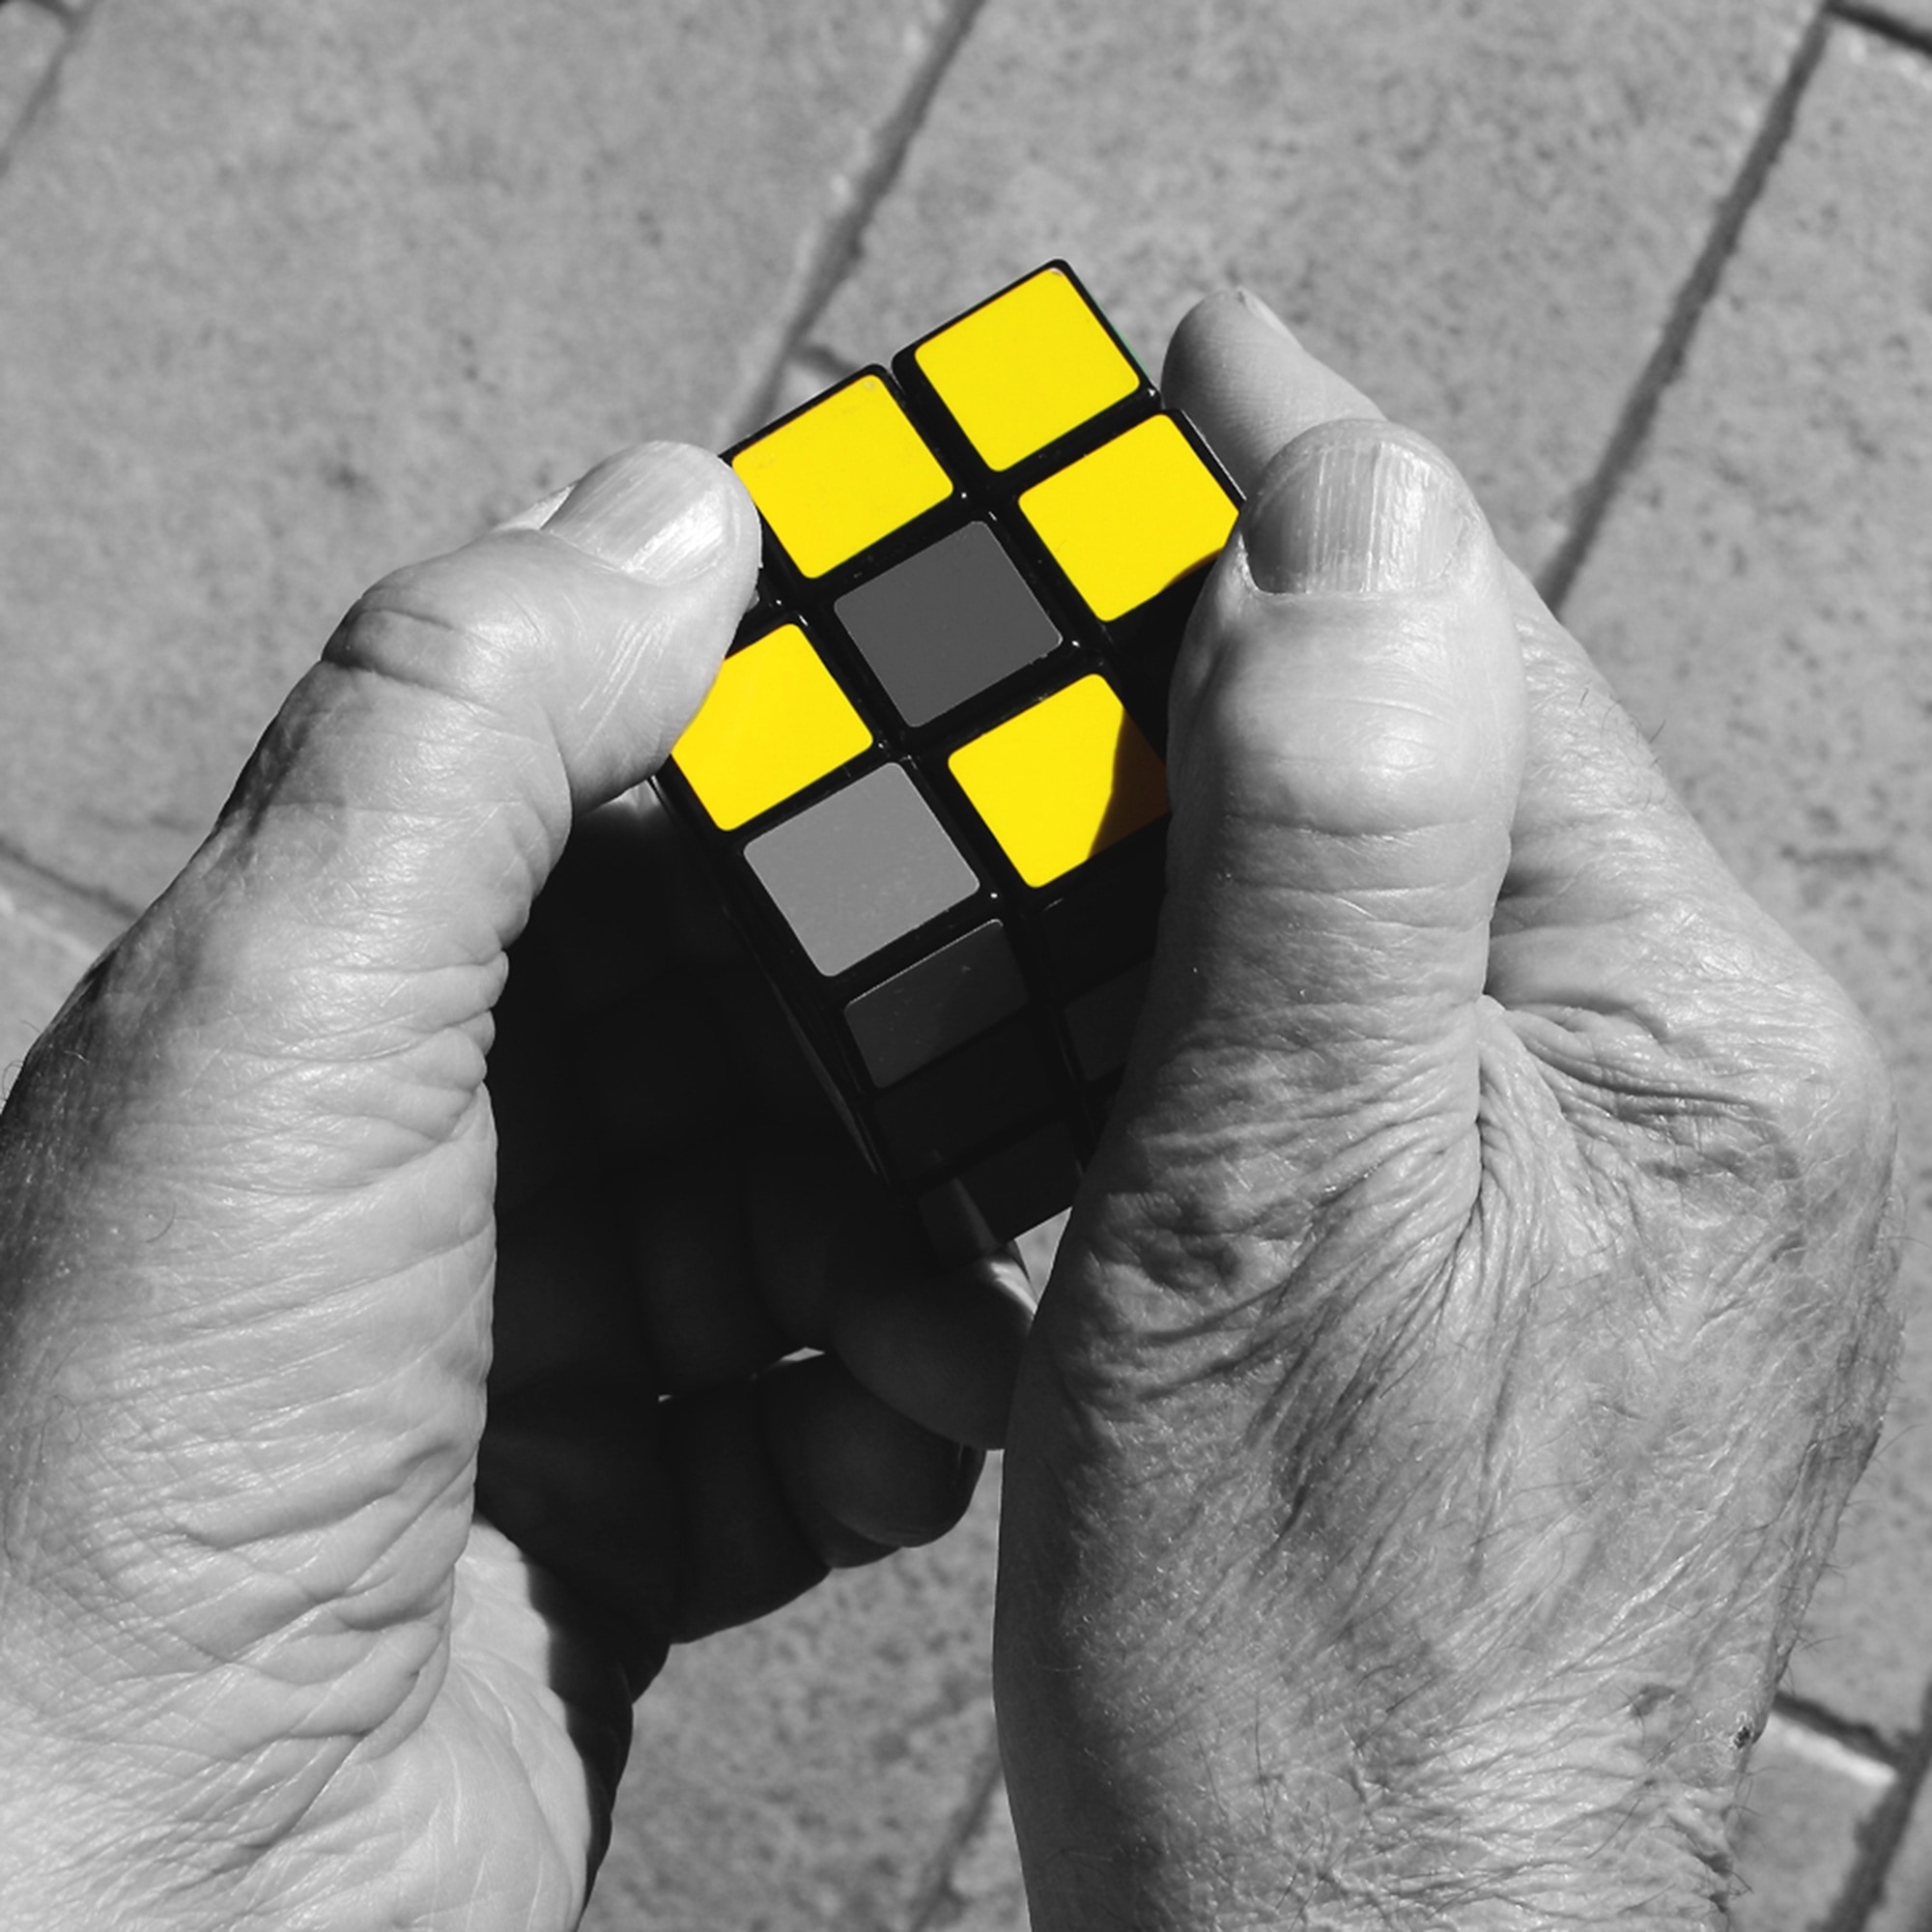 3x3 rubic cube